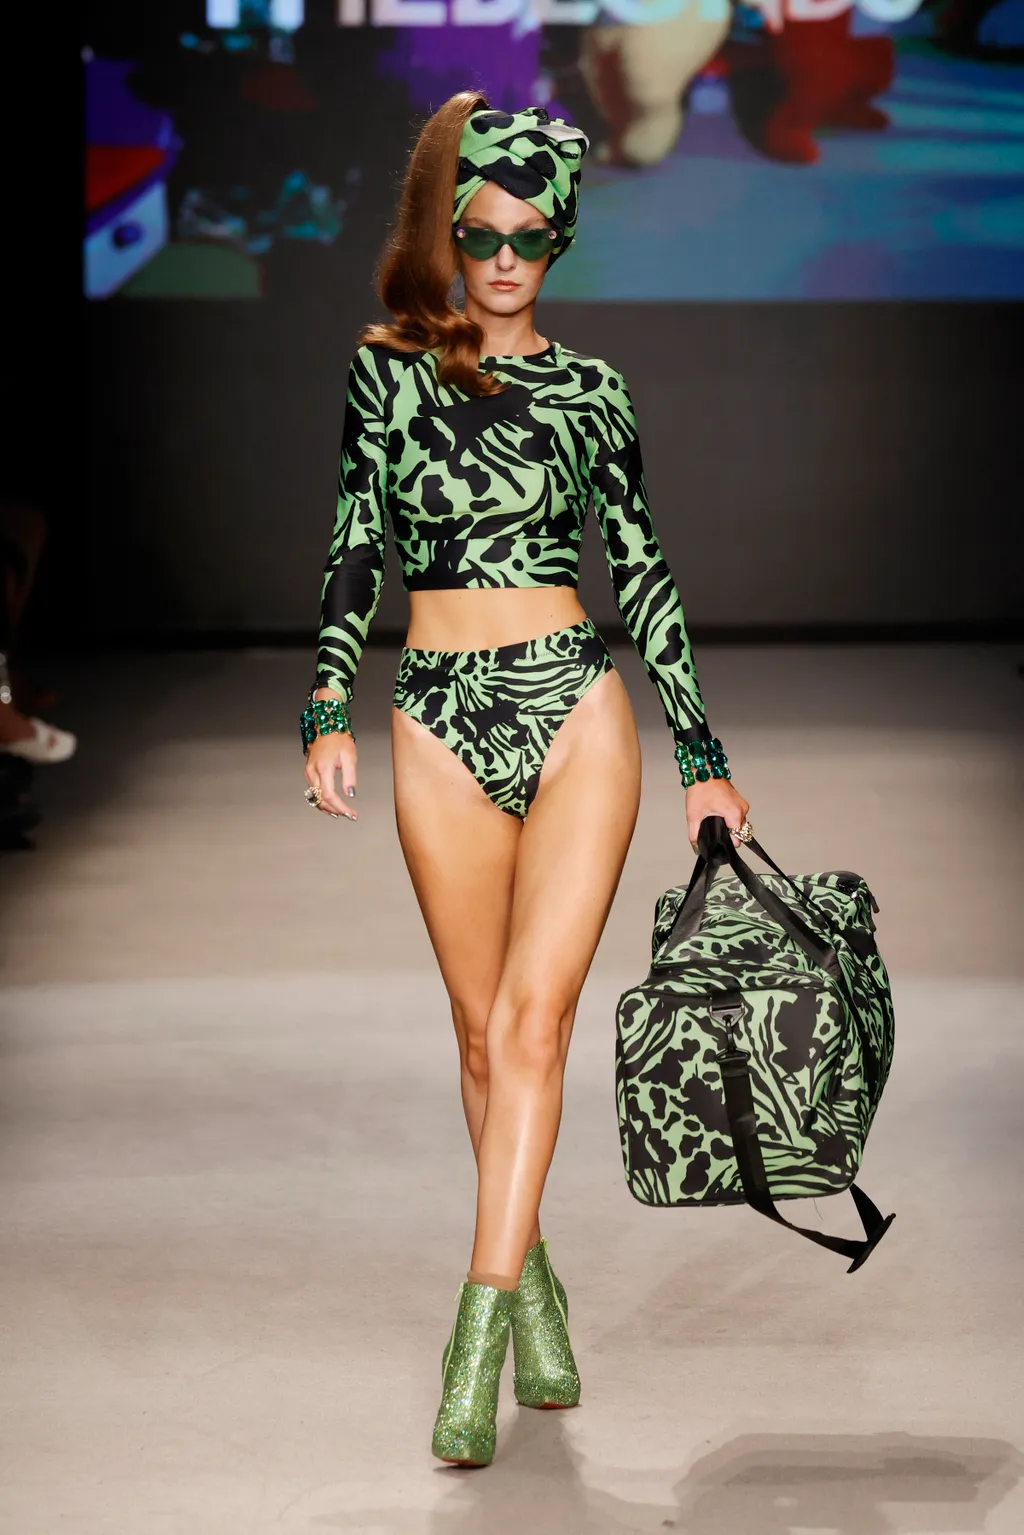 Mutatós fürdőruhákban vonultak a modellek a Miami Swim Week rendezvényen, galéria, 2023 